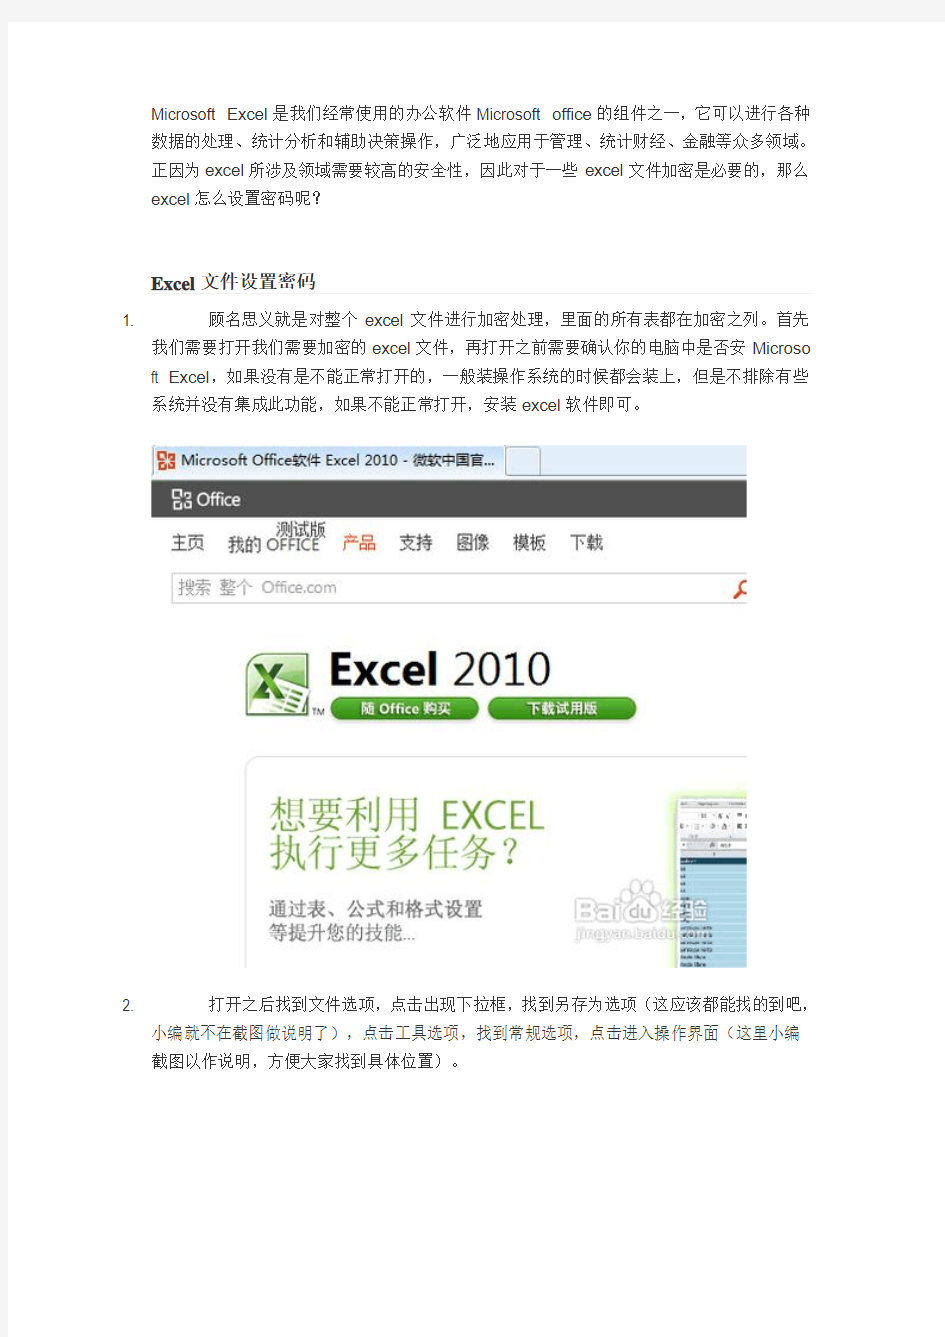 EXCEL2007、EXCEL2010设置密码方法